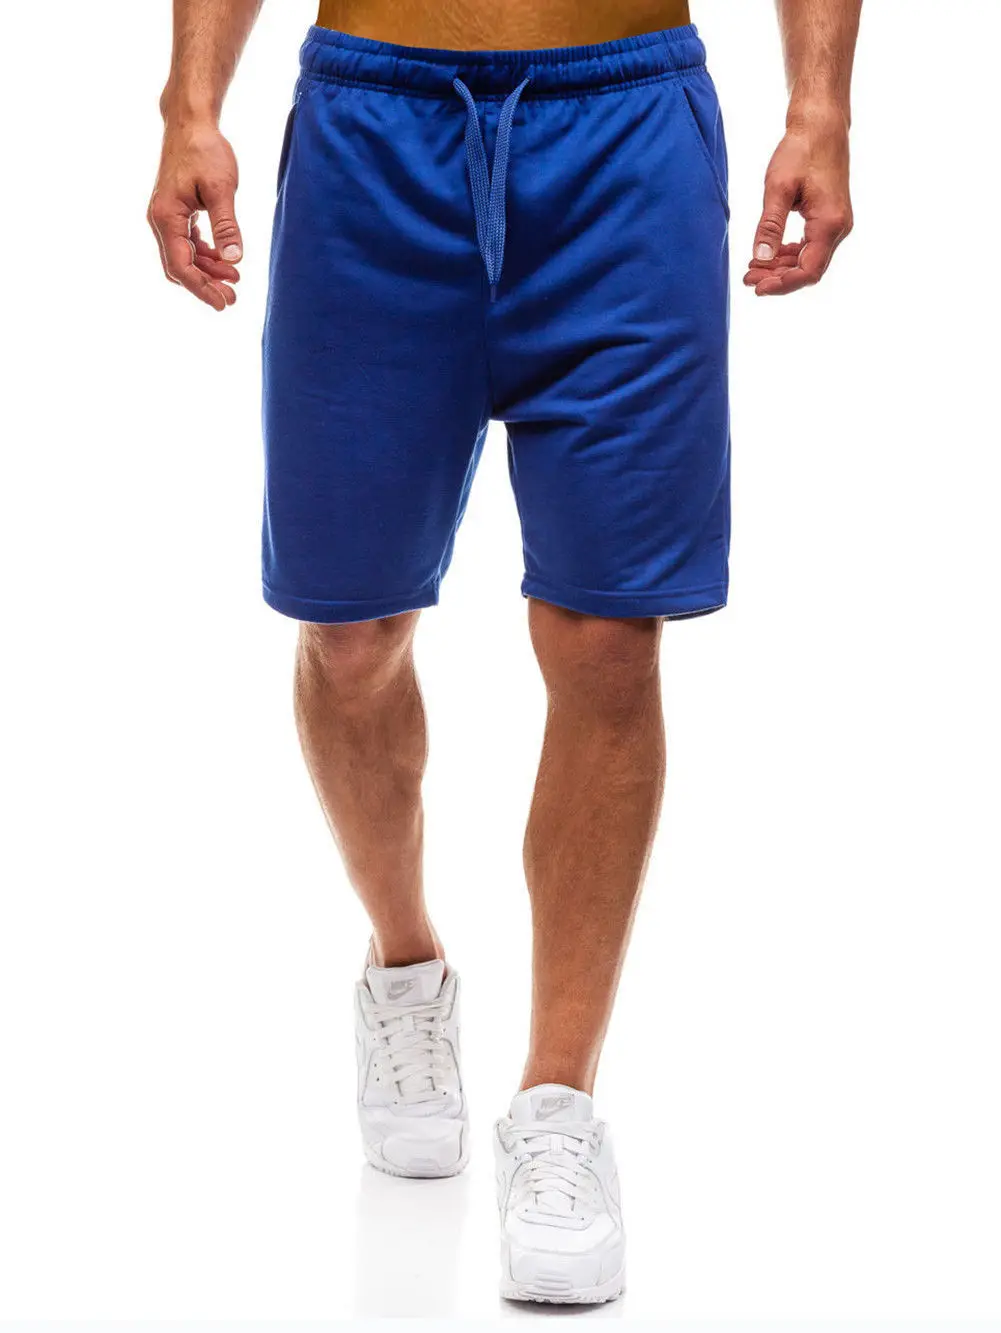 Мужские летние спортивные шорты свободные шаровары тренировочные Мешковатые повседневные шорты для бега черный синий серый